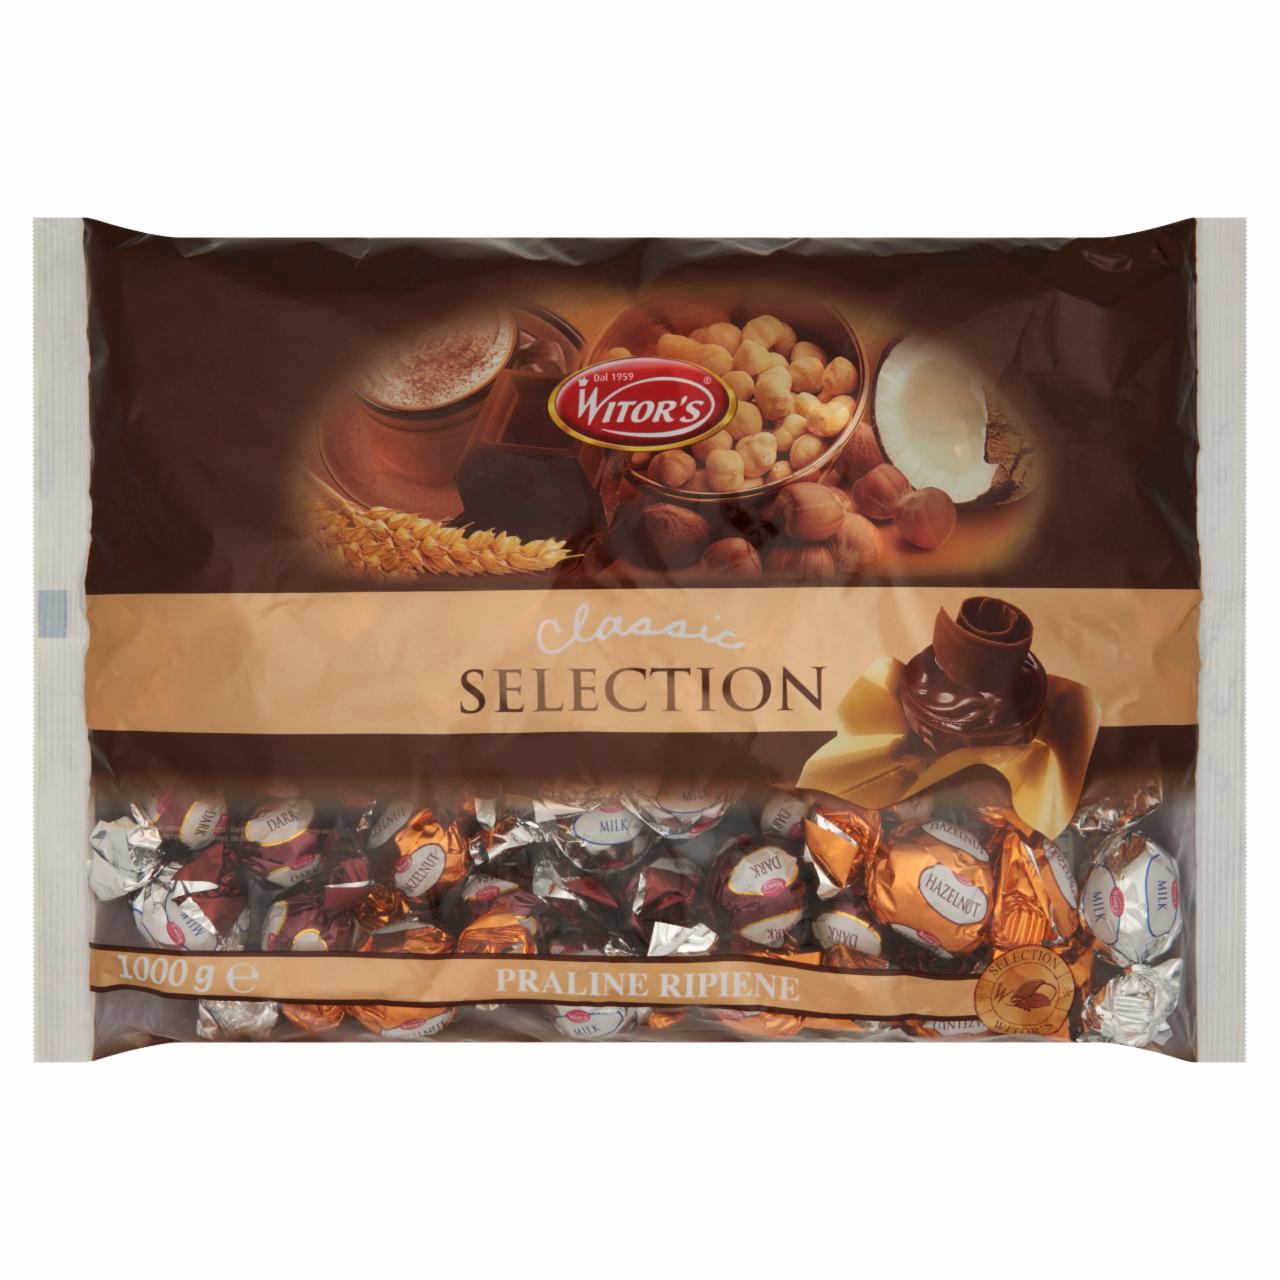 Képek - Witor's Classic Selection vegyes tejcsokoládé és étcsokoládé praliné ropogós gabonával töltve 1000 g